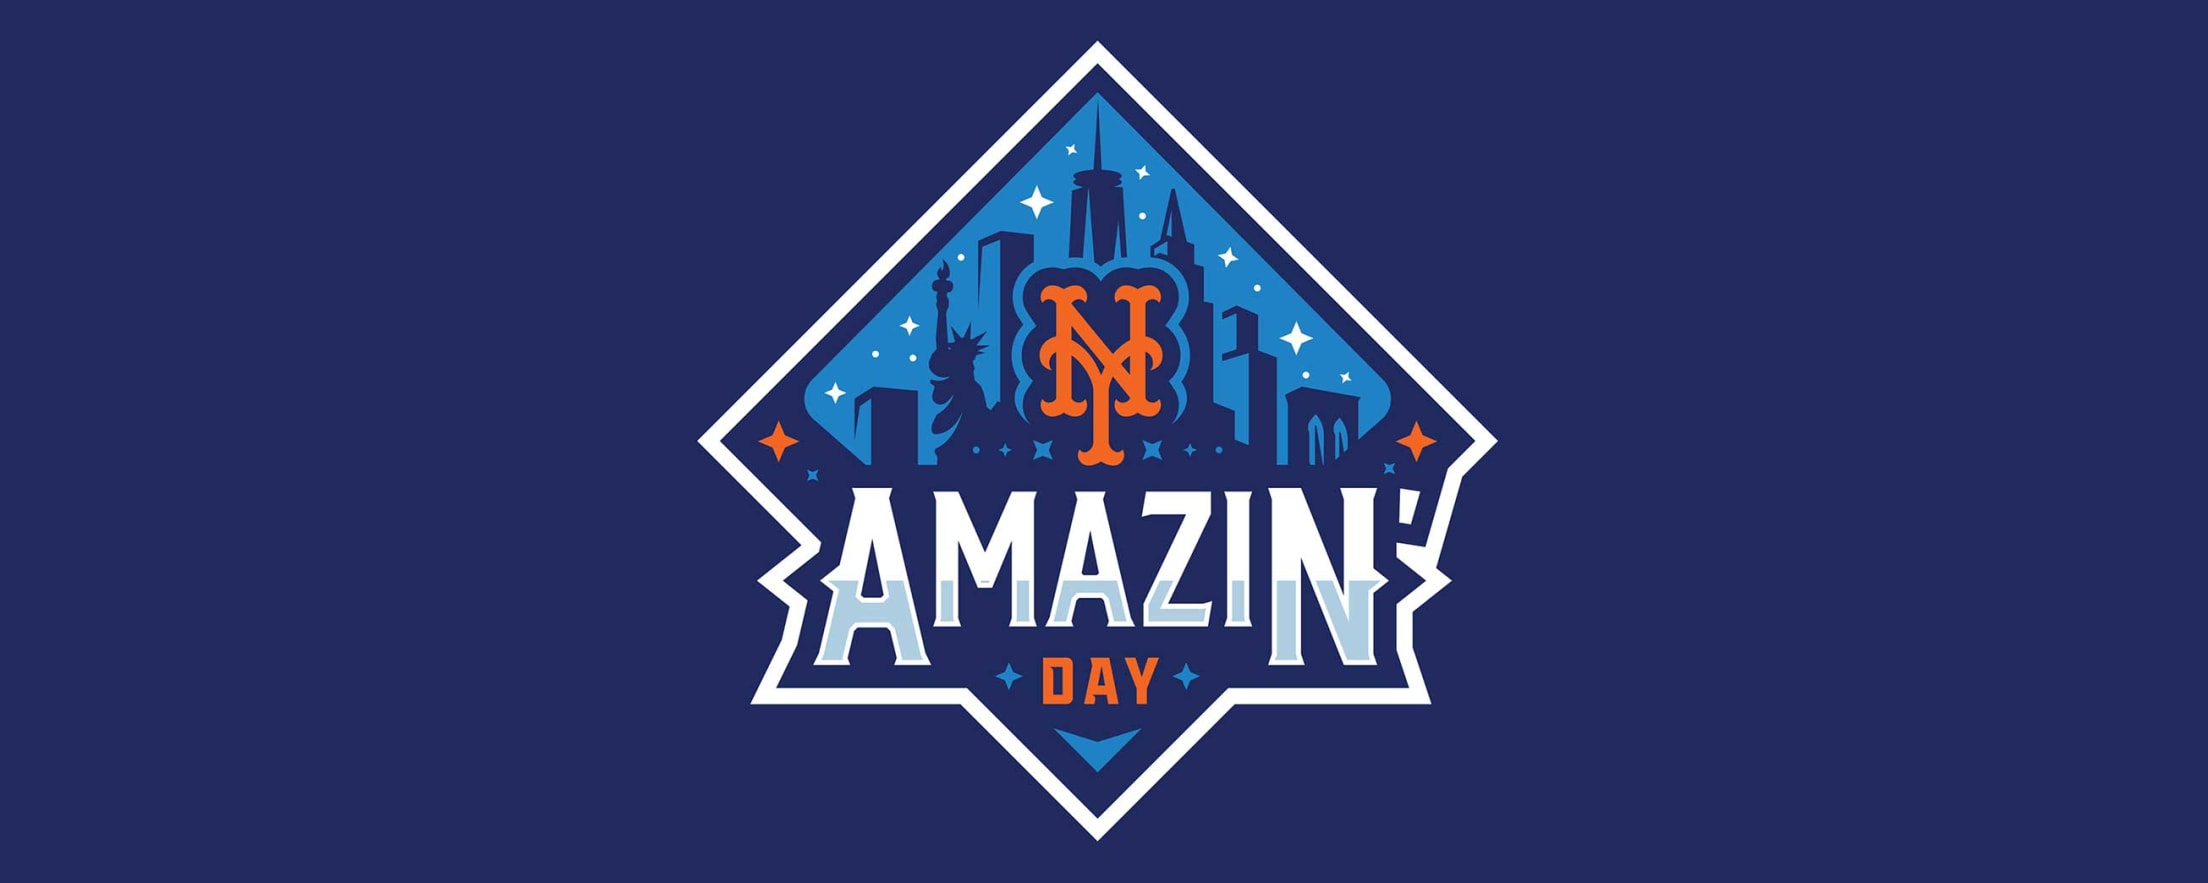 Mets Amazin' Day New York Mets